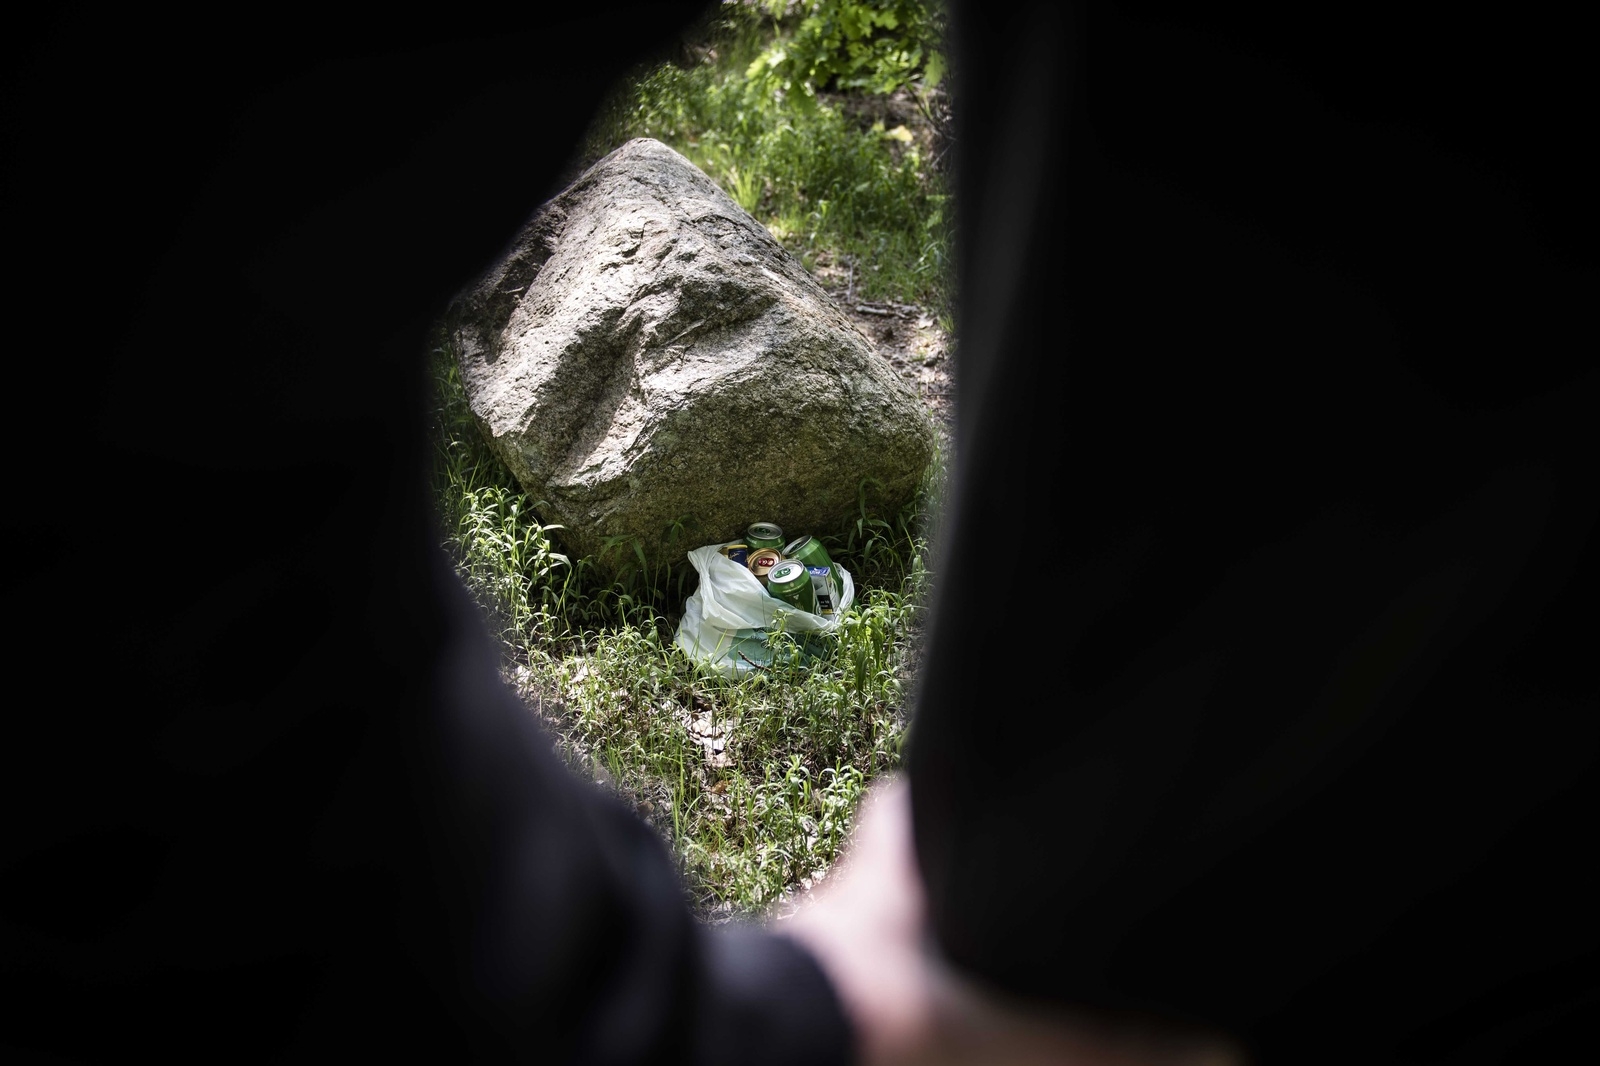 En specifik sten i skogen brukade politikern lämna alkohol som Emil kunde hämta, berättar han. Bilden är arrangerad.